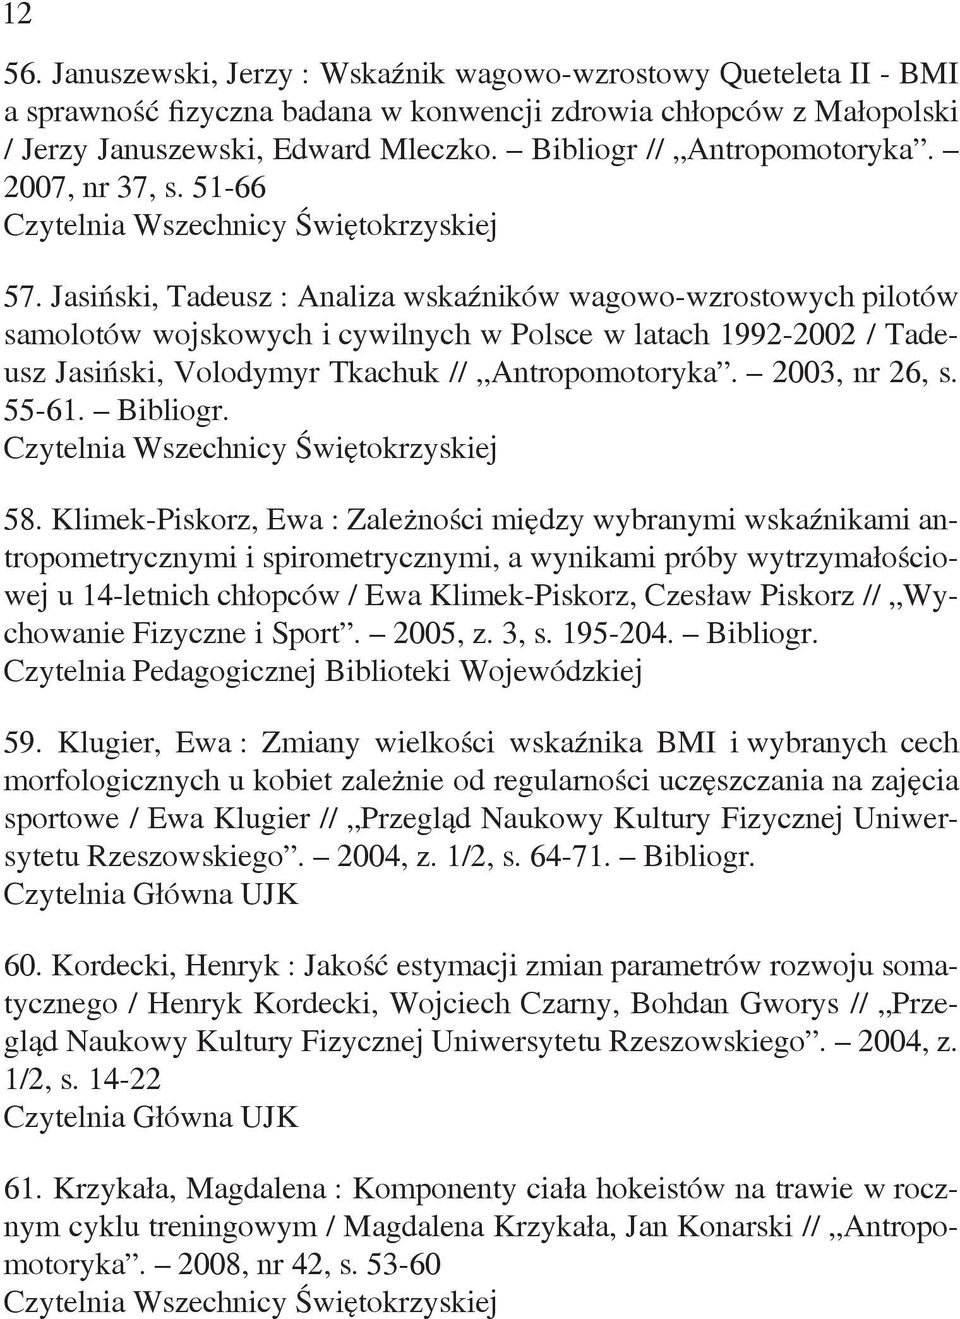 Jasiński, Tadeusz : Analiza wskaźników wagowo-wzrostowych pilotów samolotów wojskowych i cywilnych w Polsce w latach 1992-2002 / Tadeusz Jasiński, Volodymyr Tkachuk // Antropomotoryka. 2003, nr 26, s.